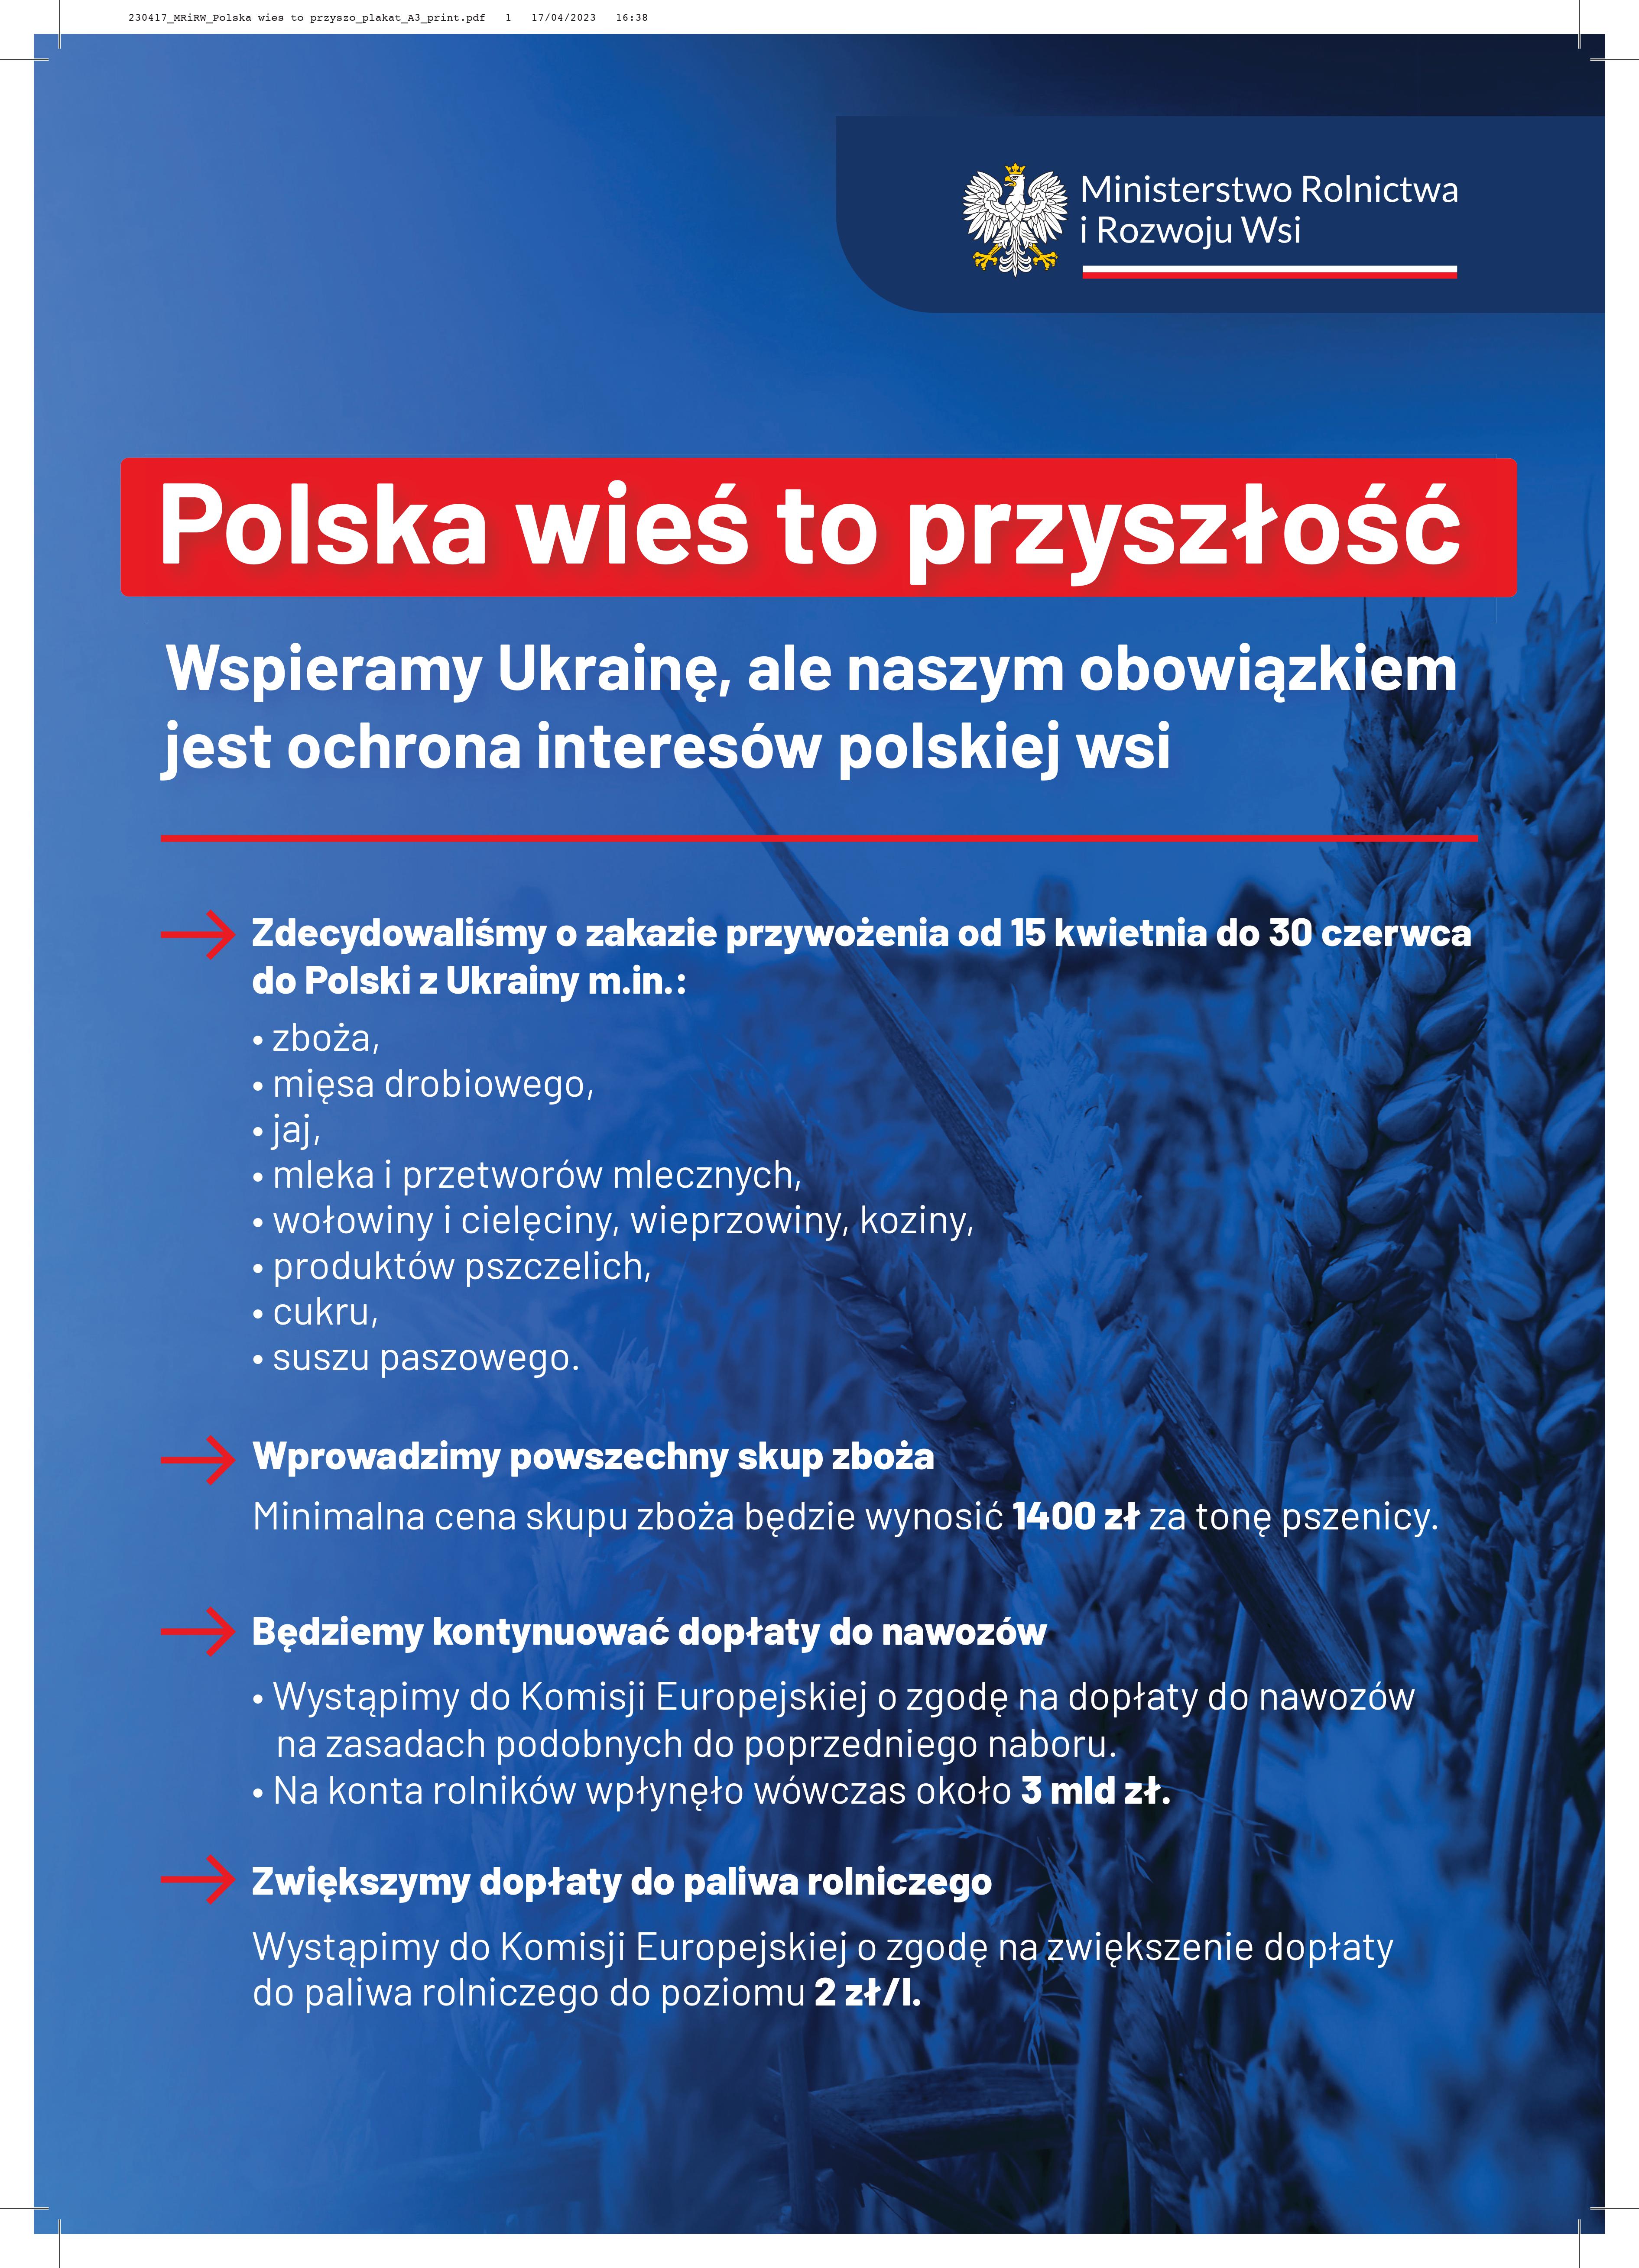 MRiRW Polska wies to przyszłość plakat A3 print